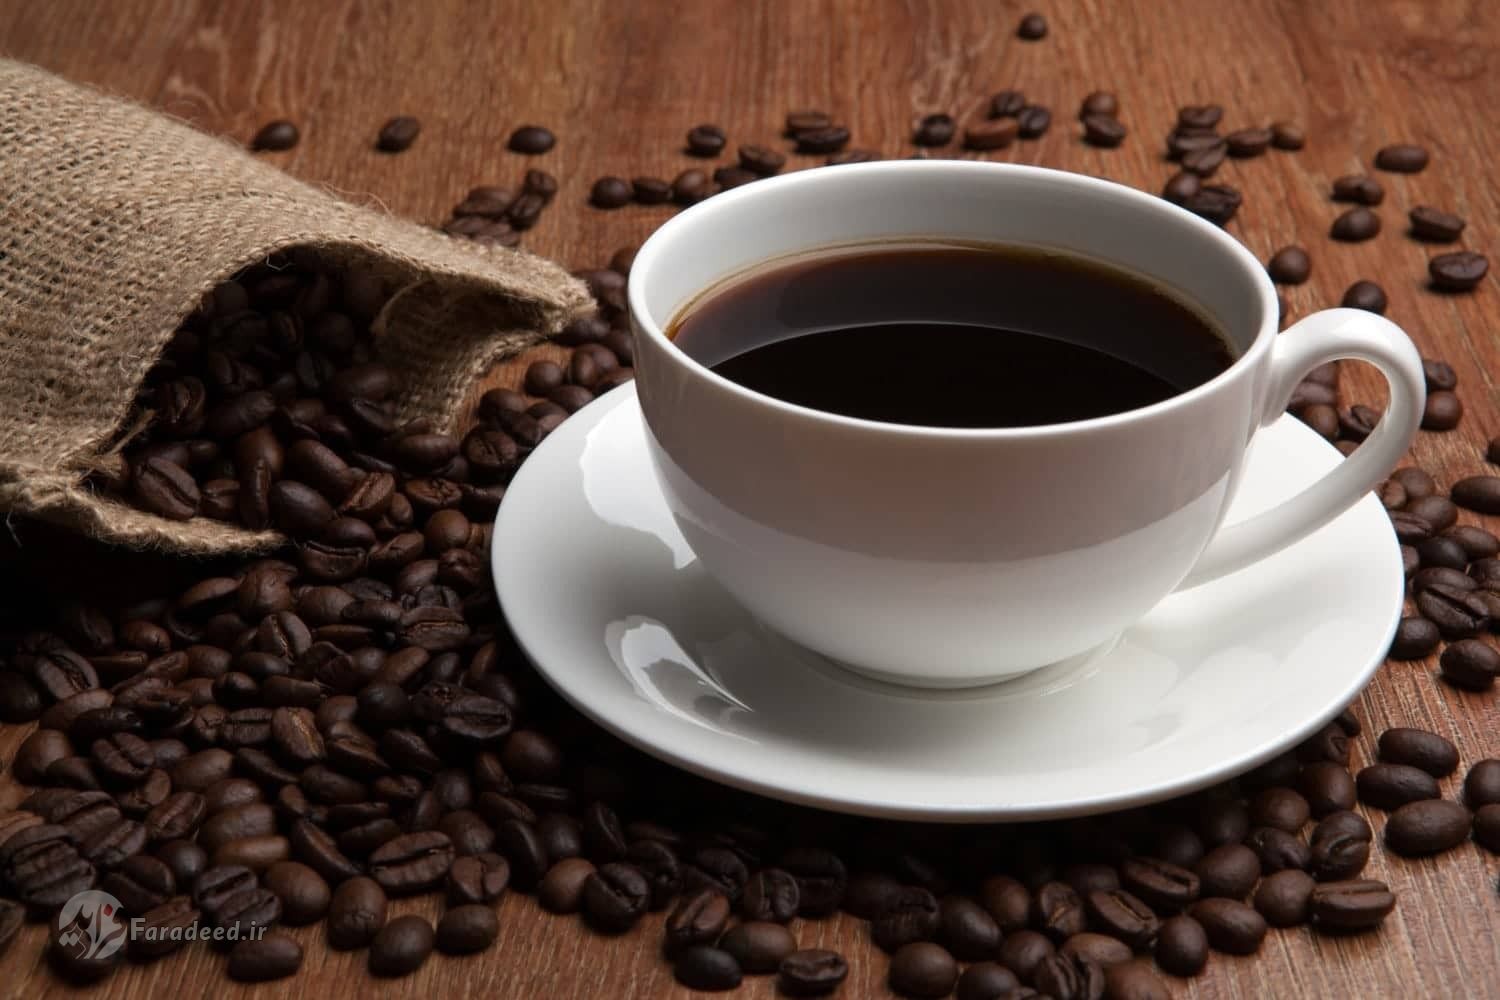 نحوه درست کردن قهوه؛ چگونه در خانه قهوه درست کنیم؟